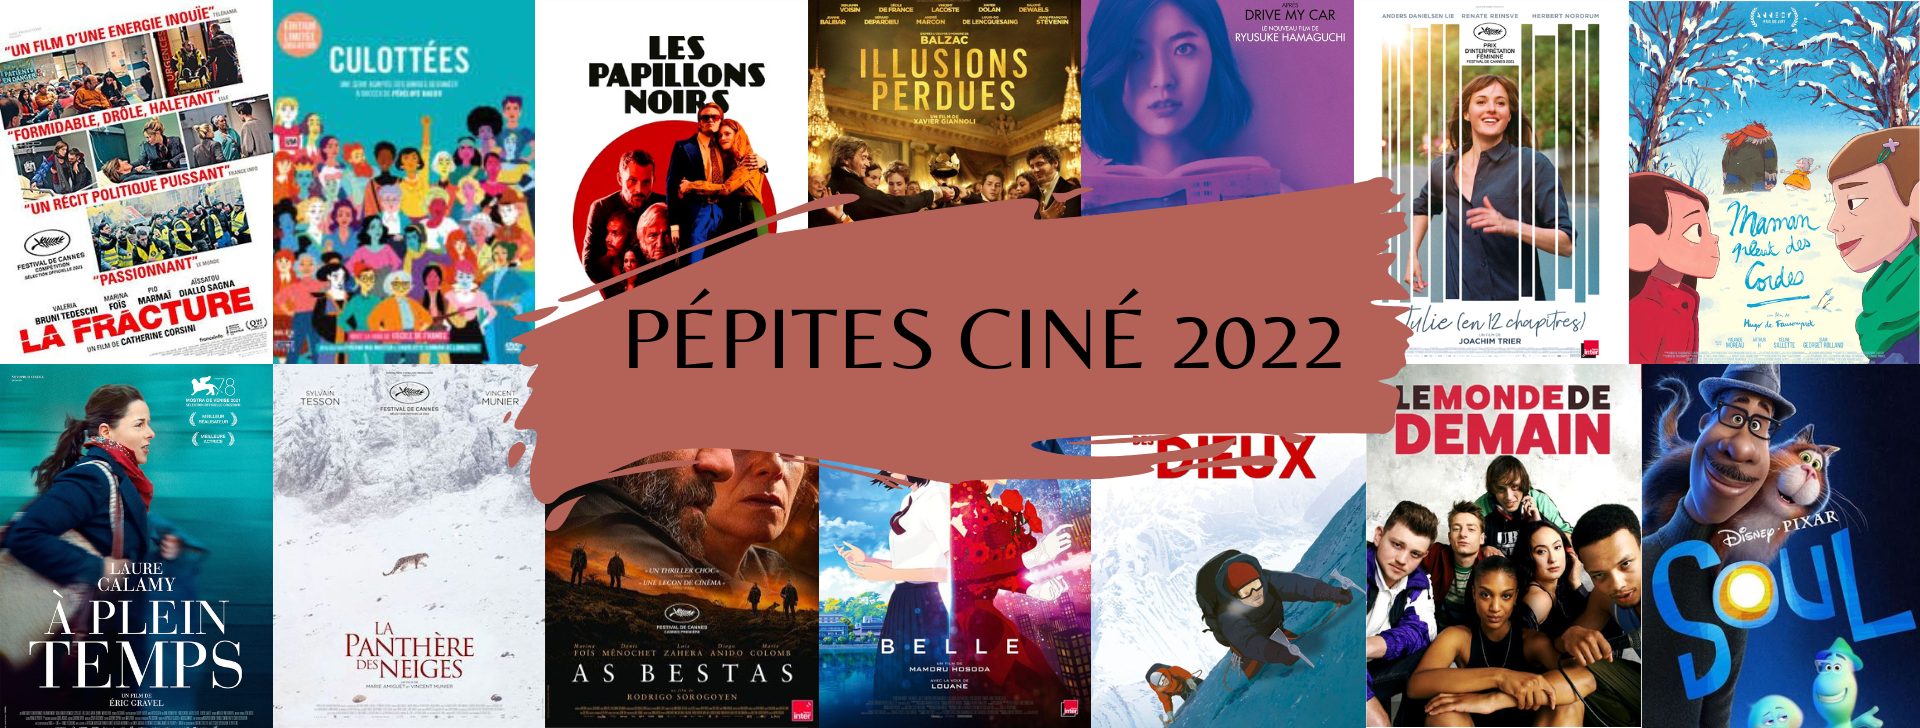 Patchwork des affiches de films 2022